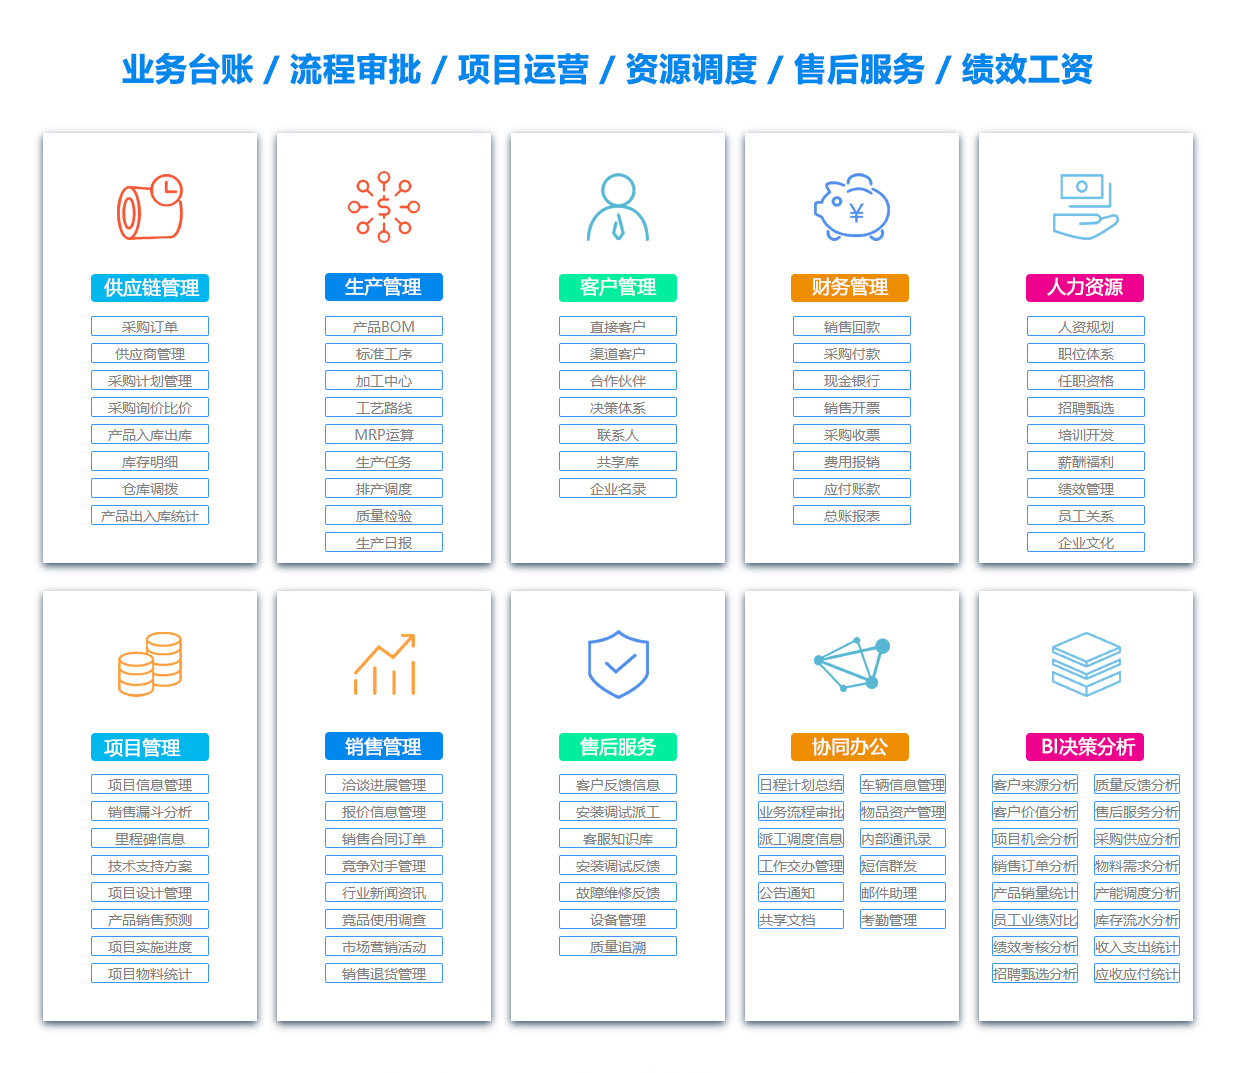 上海SCM:供应链管理系统